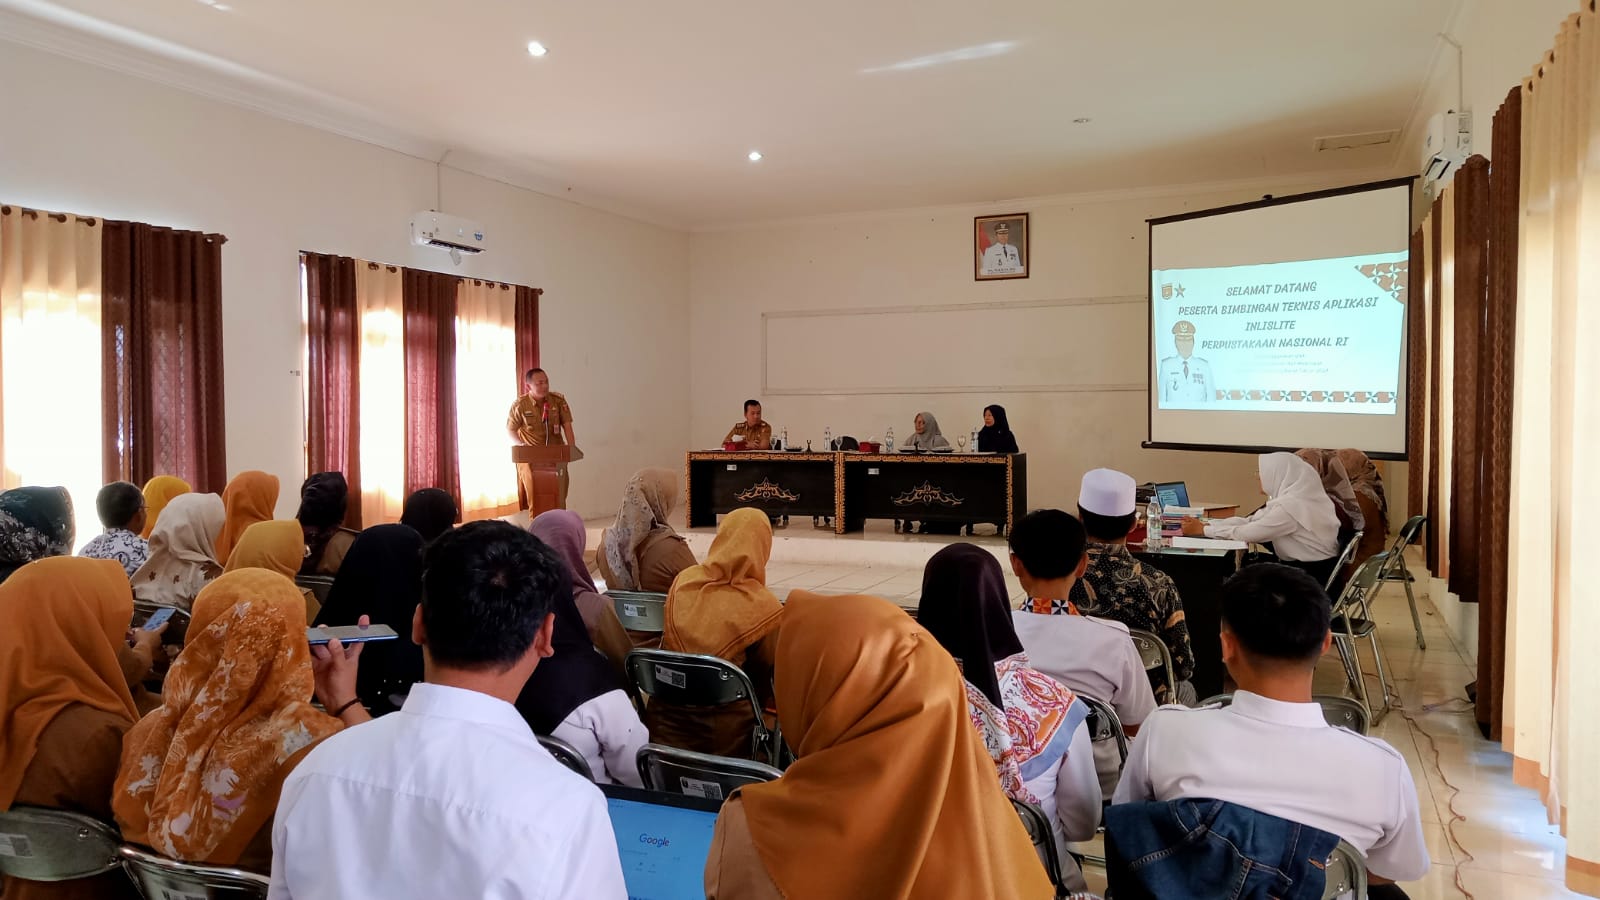 Dispersip Lampung Barat Gelar Bimtek Otomasi Perpustakaan Berbasis Inlislite 